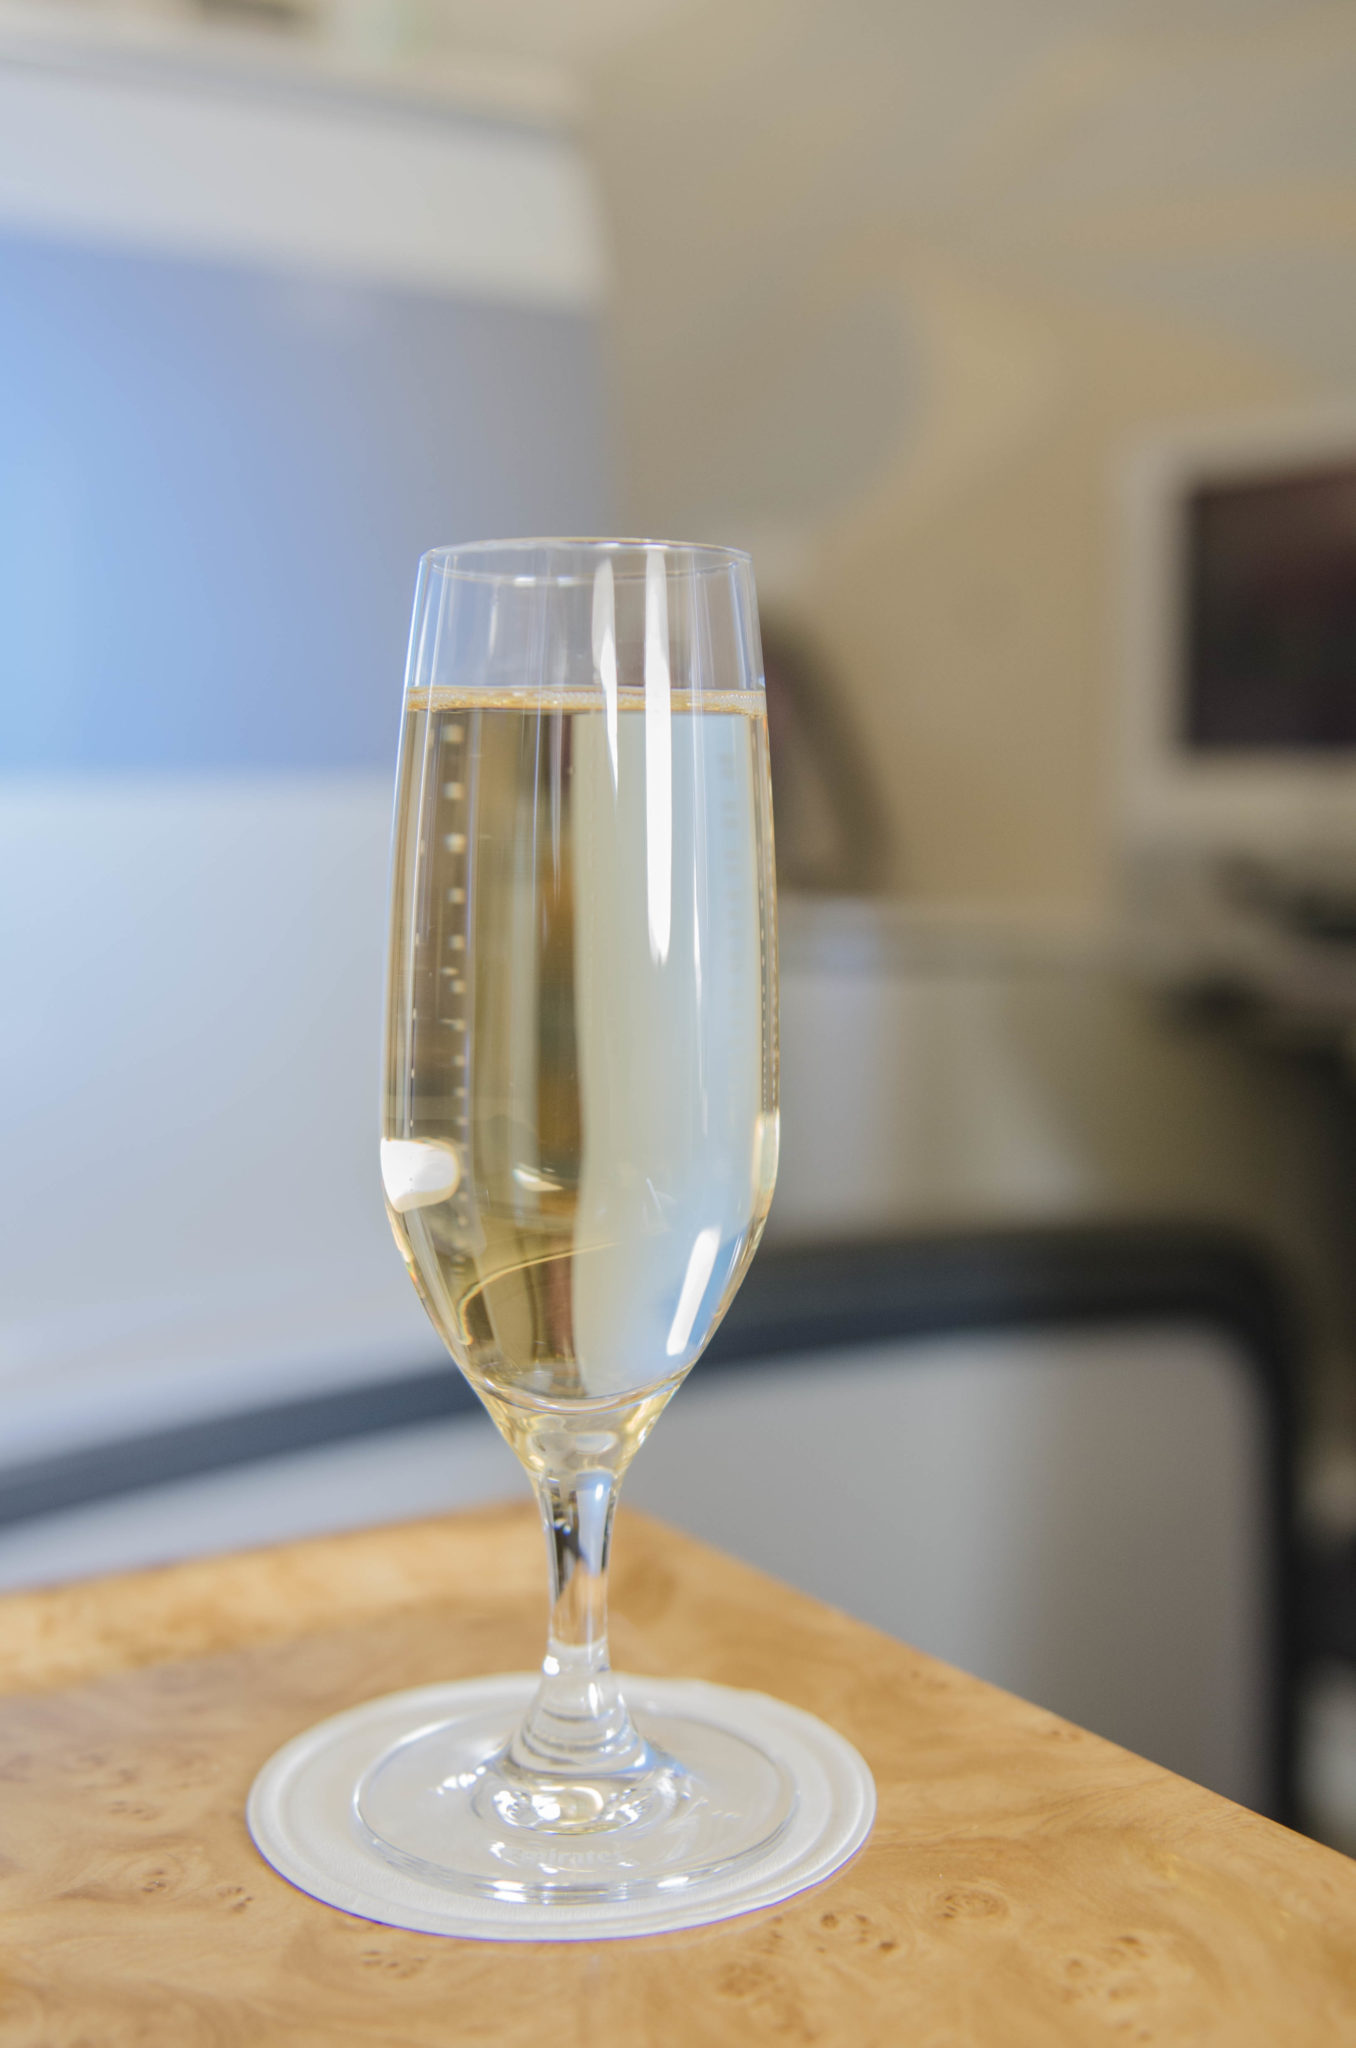 In der Emirates Business Class gibt's ein Glas Champagner zur Begrüßung.